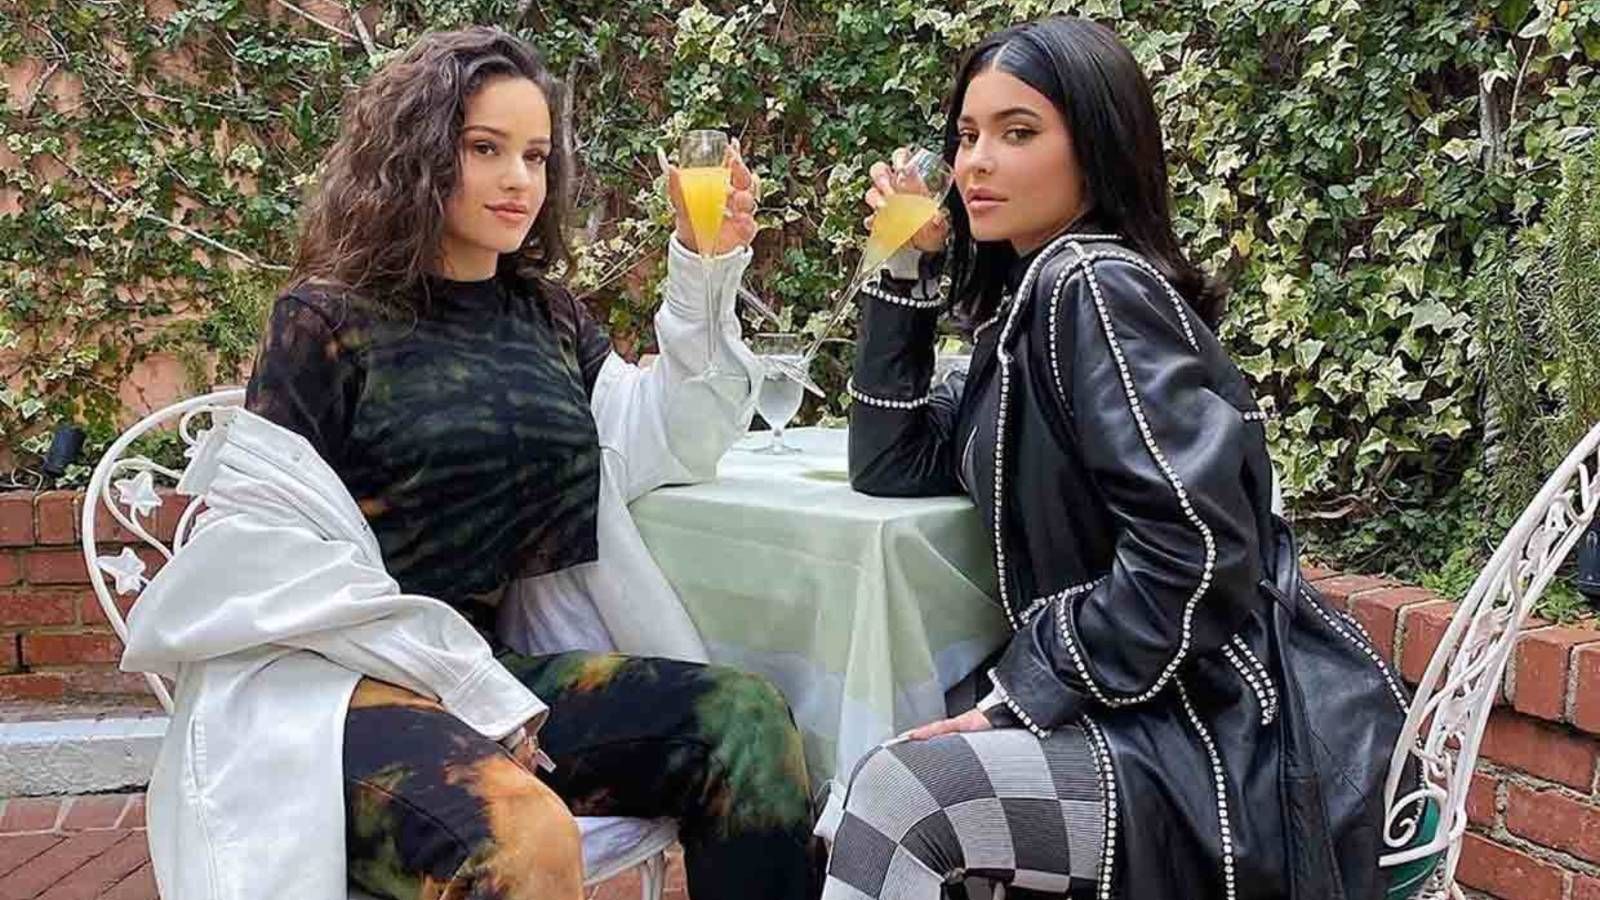 Rosalía y Kylie Jenner rompen su amistad y se dejan de seguir en Instagram